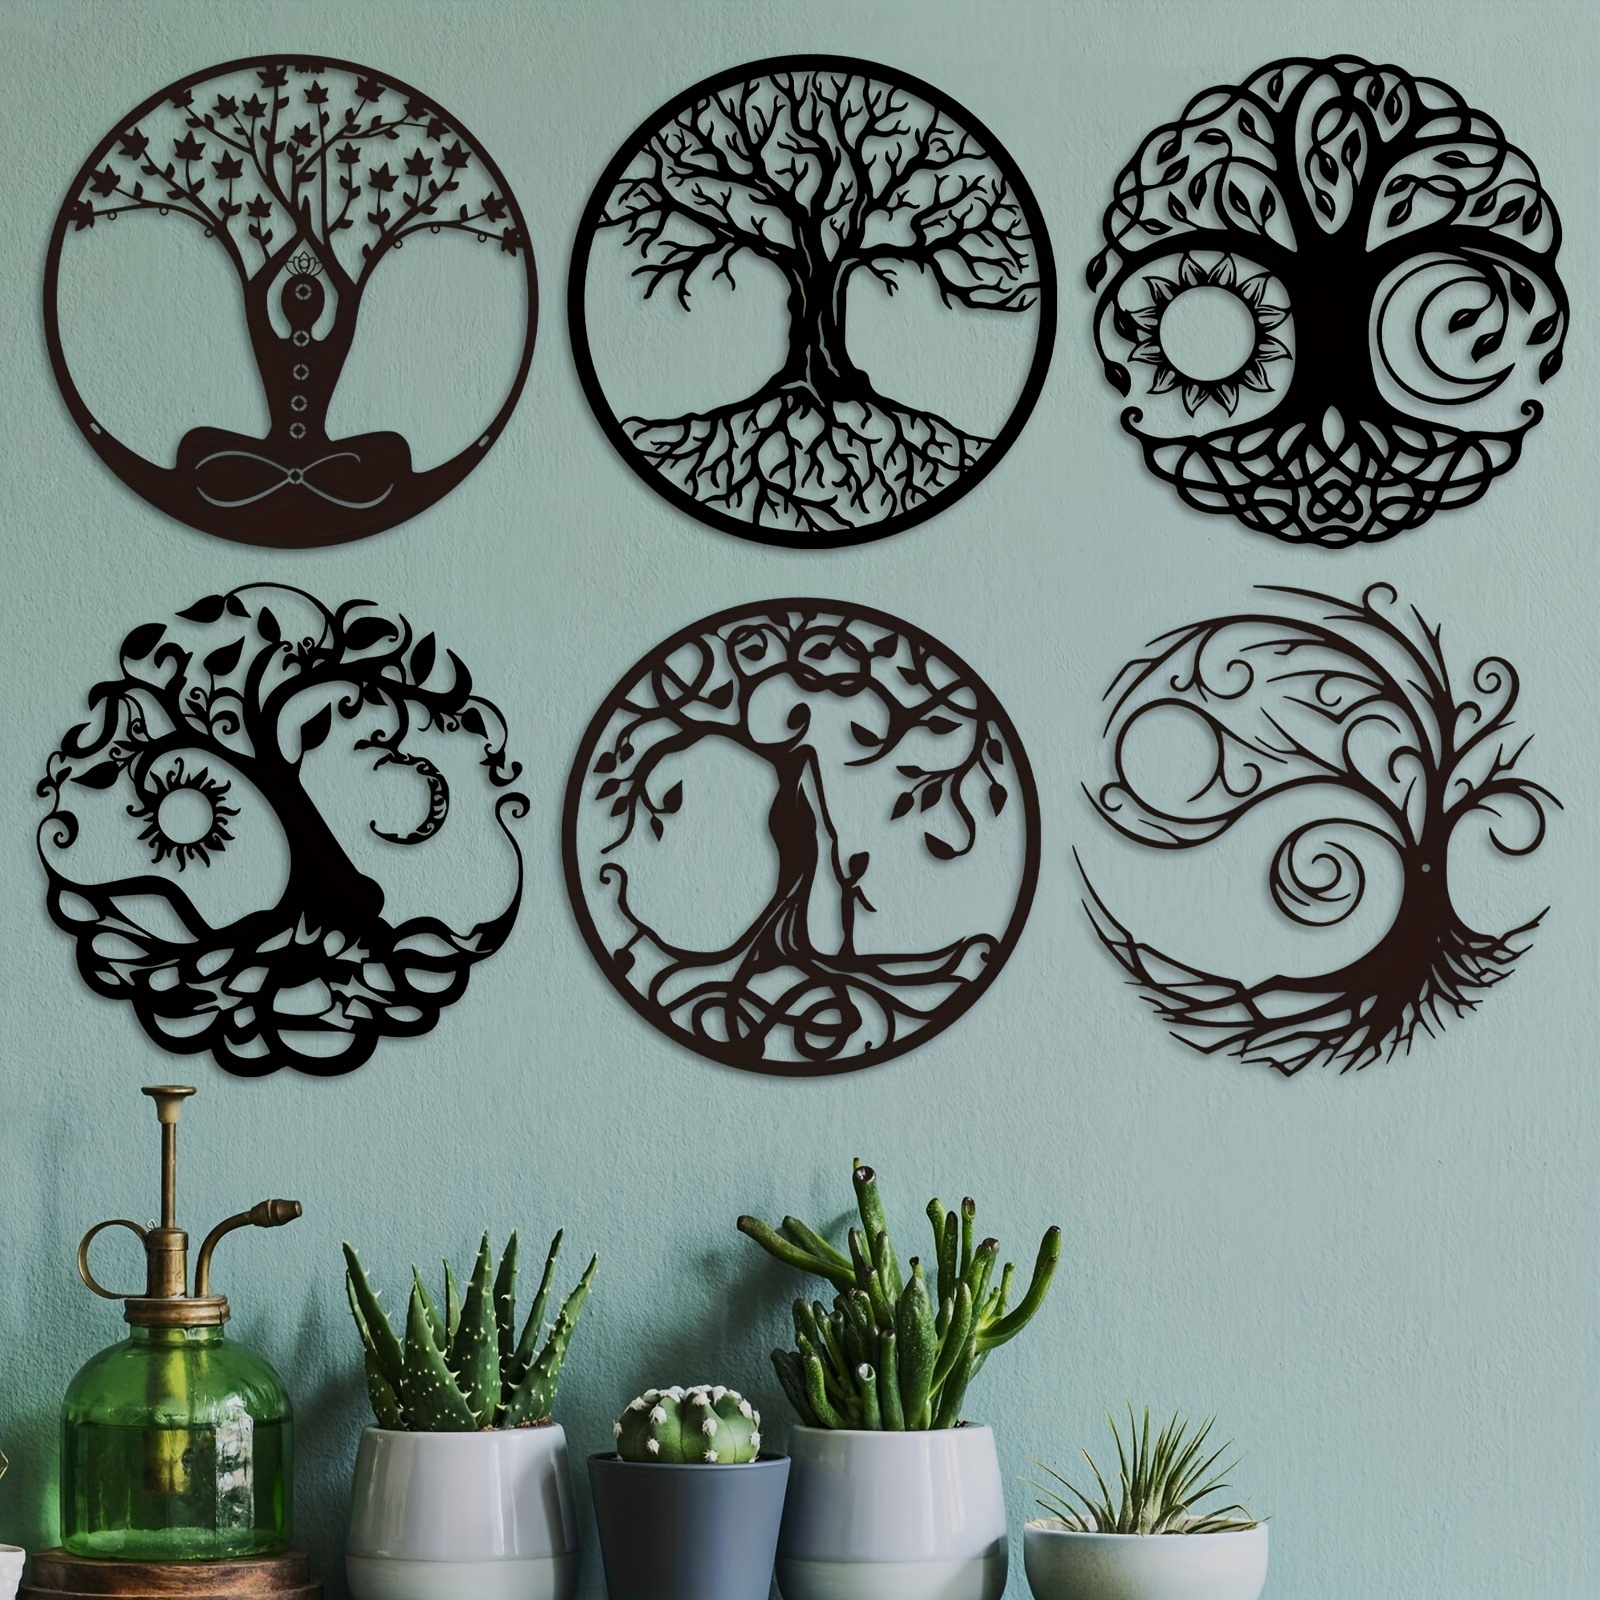  Arte de pared de metal, decoración de pared de metal para el  hogar, juego de 3 mandalas de madera, decoración para colgar en la pared,  mural de pared tallada con flores